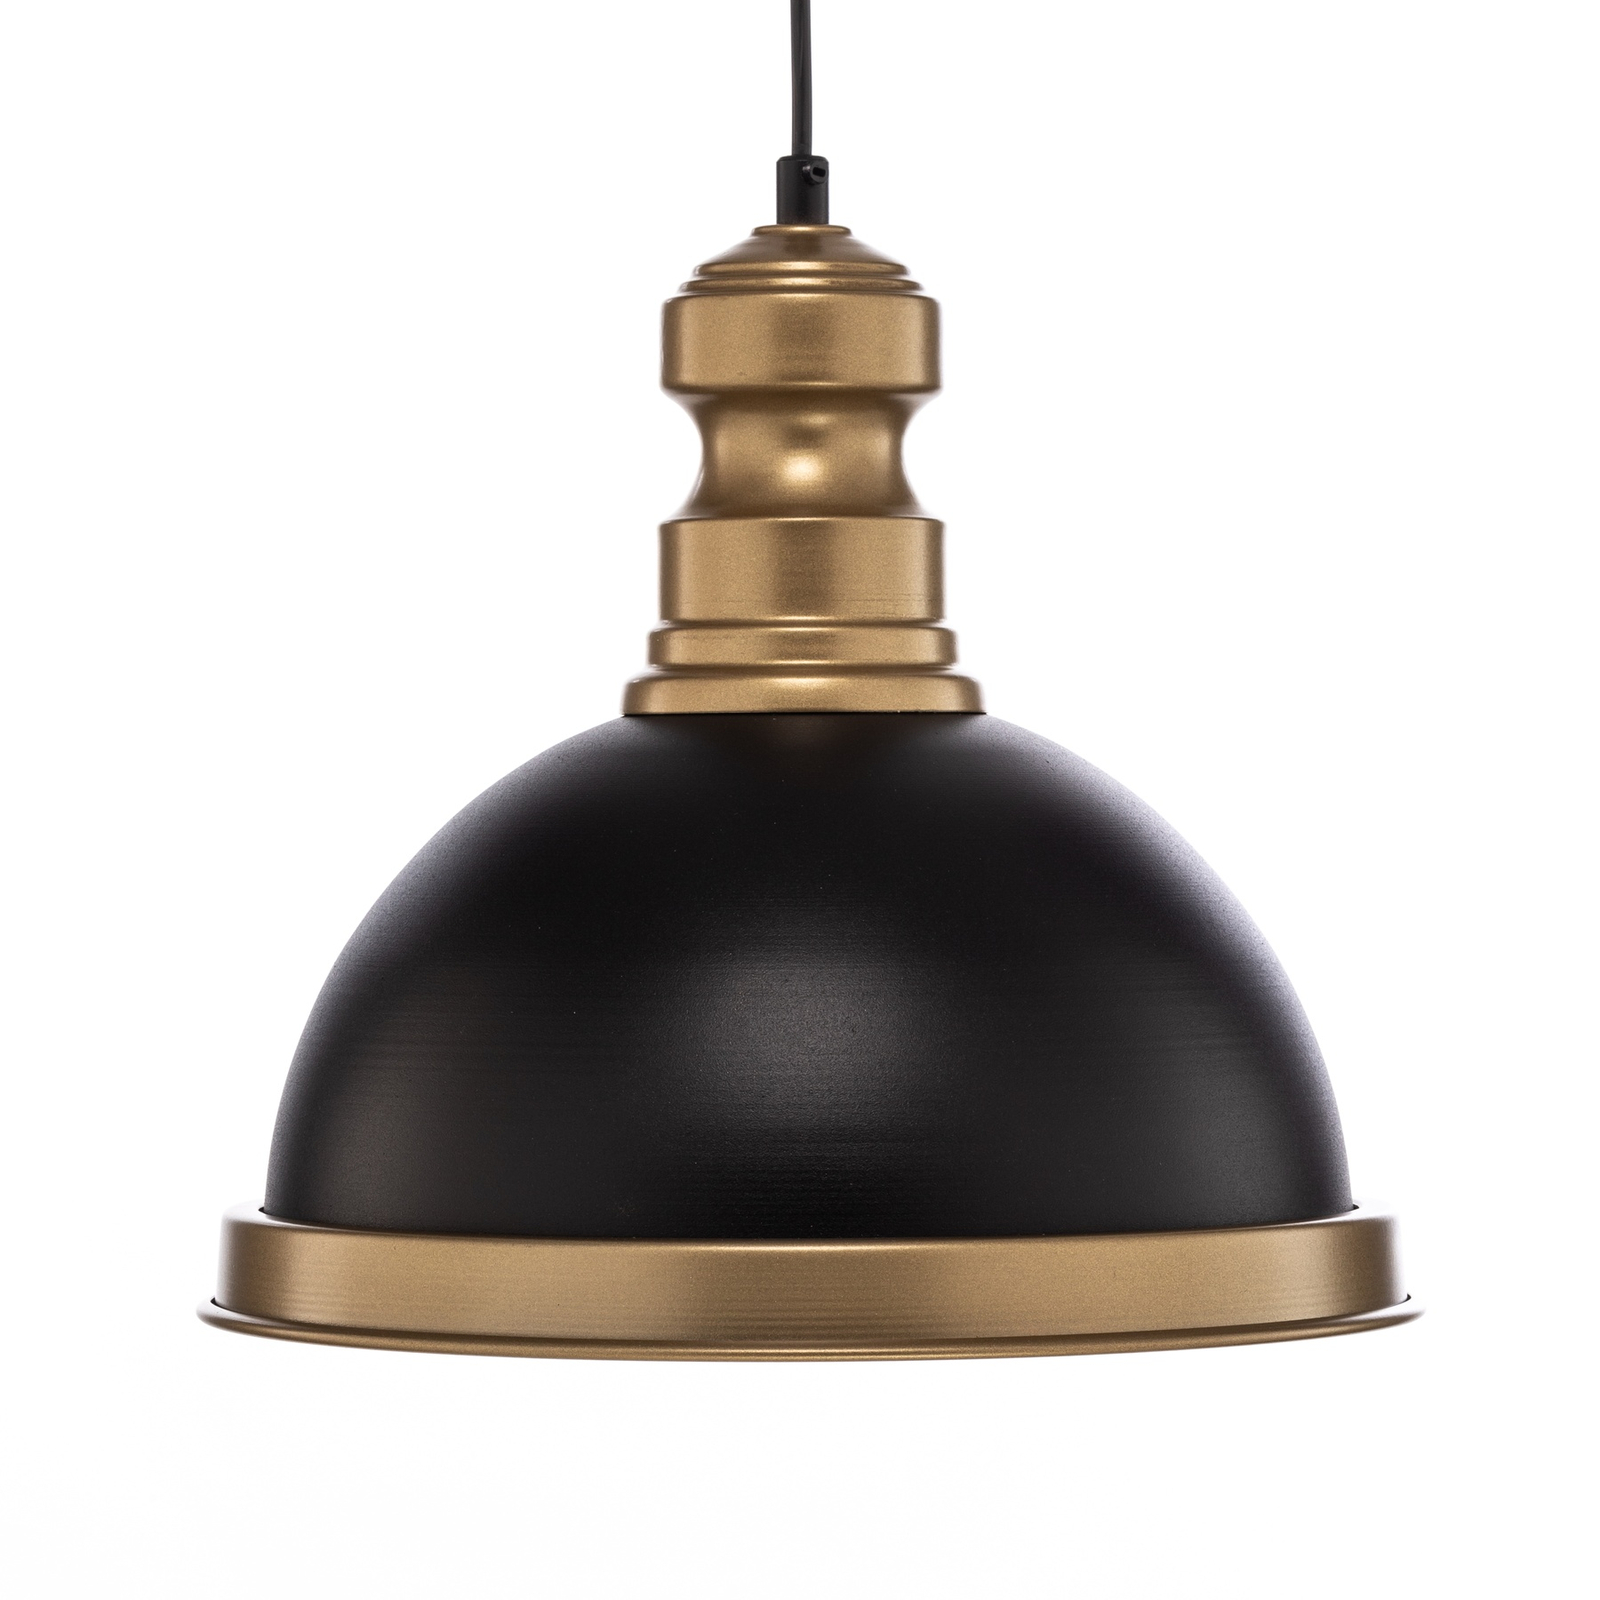 Hanglamp AV-4106-M31-BSY zwart/antiek-goud